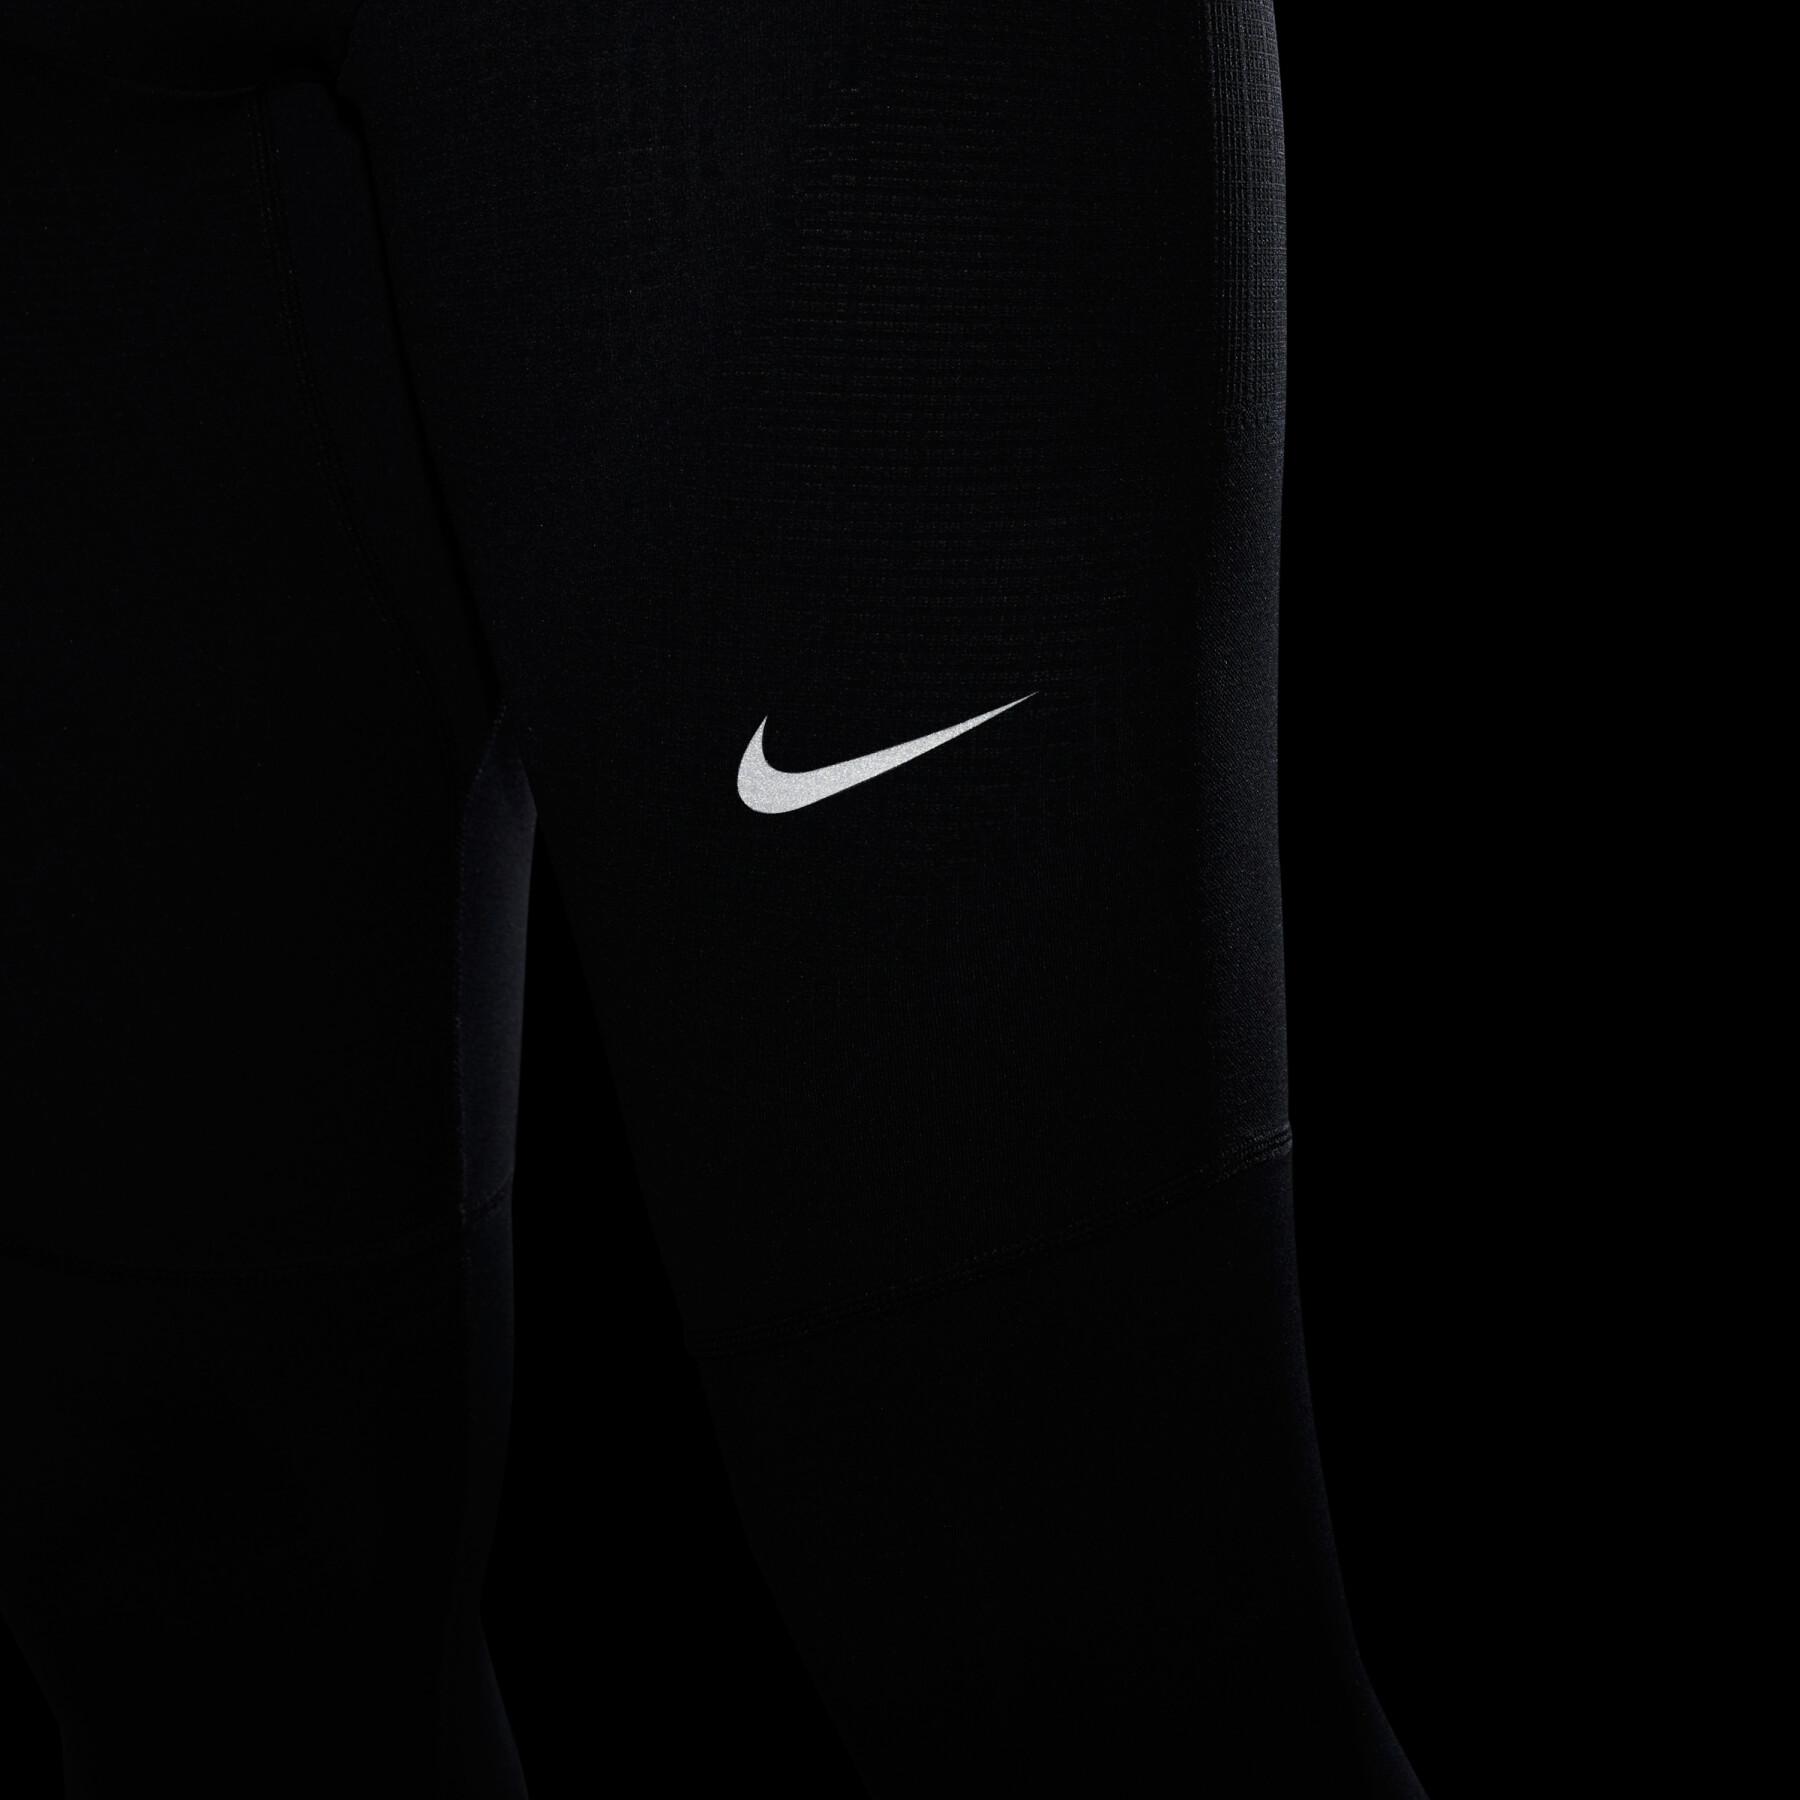 Shorts Nike phenom elite